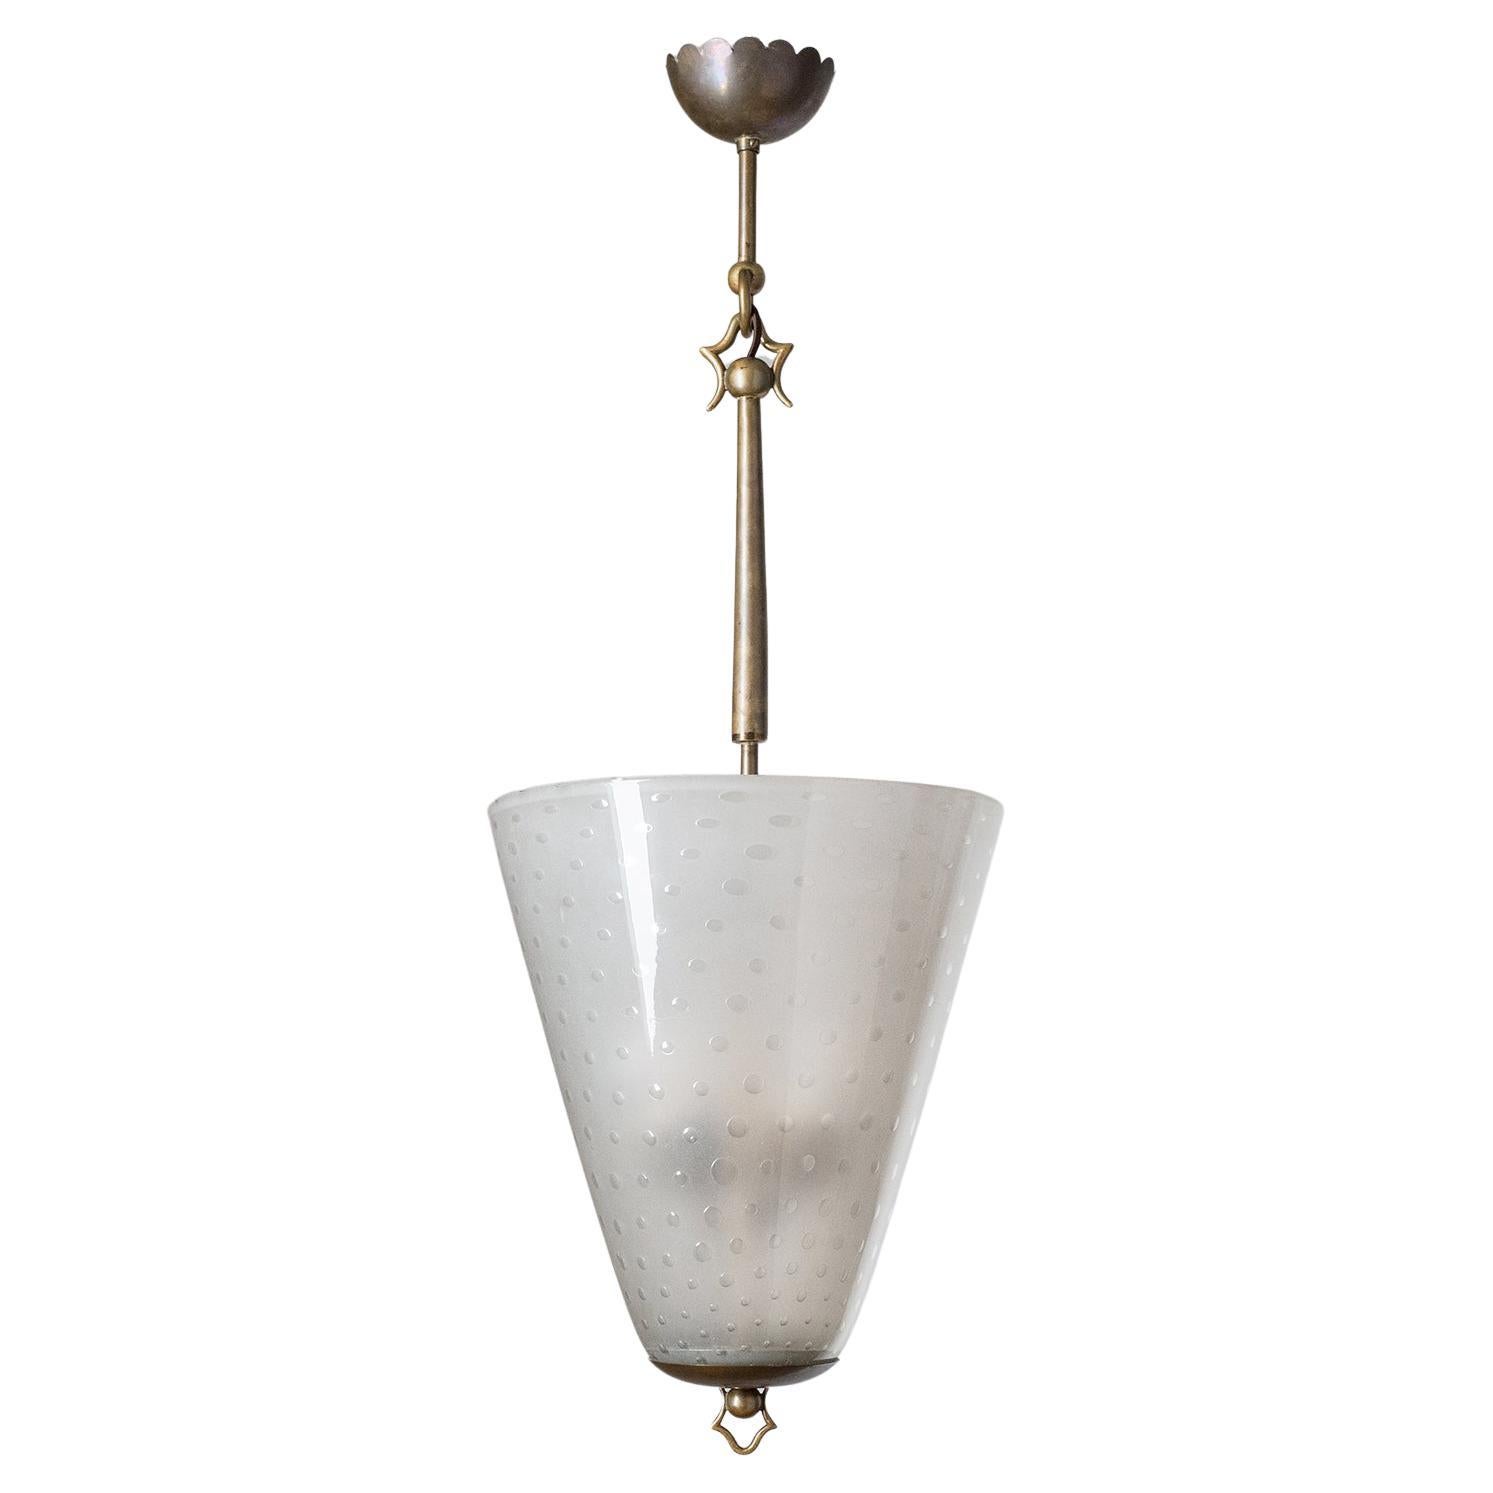 Italian Lantern, 1930s, Murano Glass and Brass